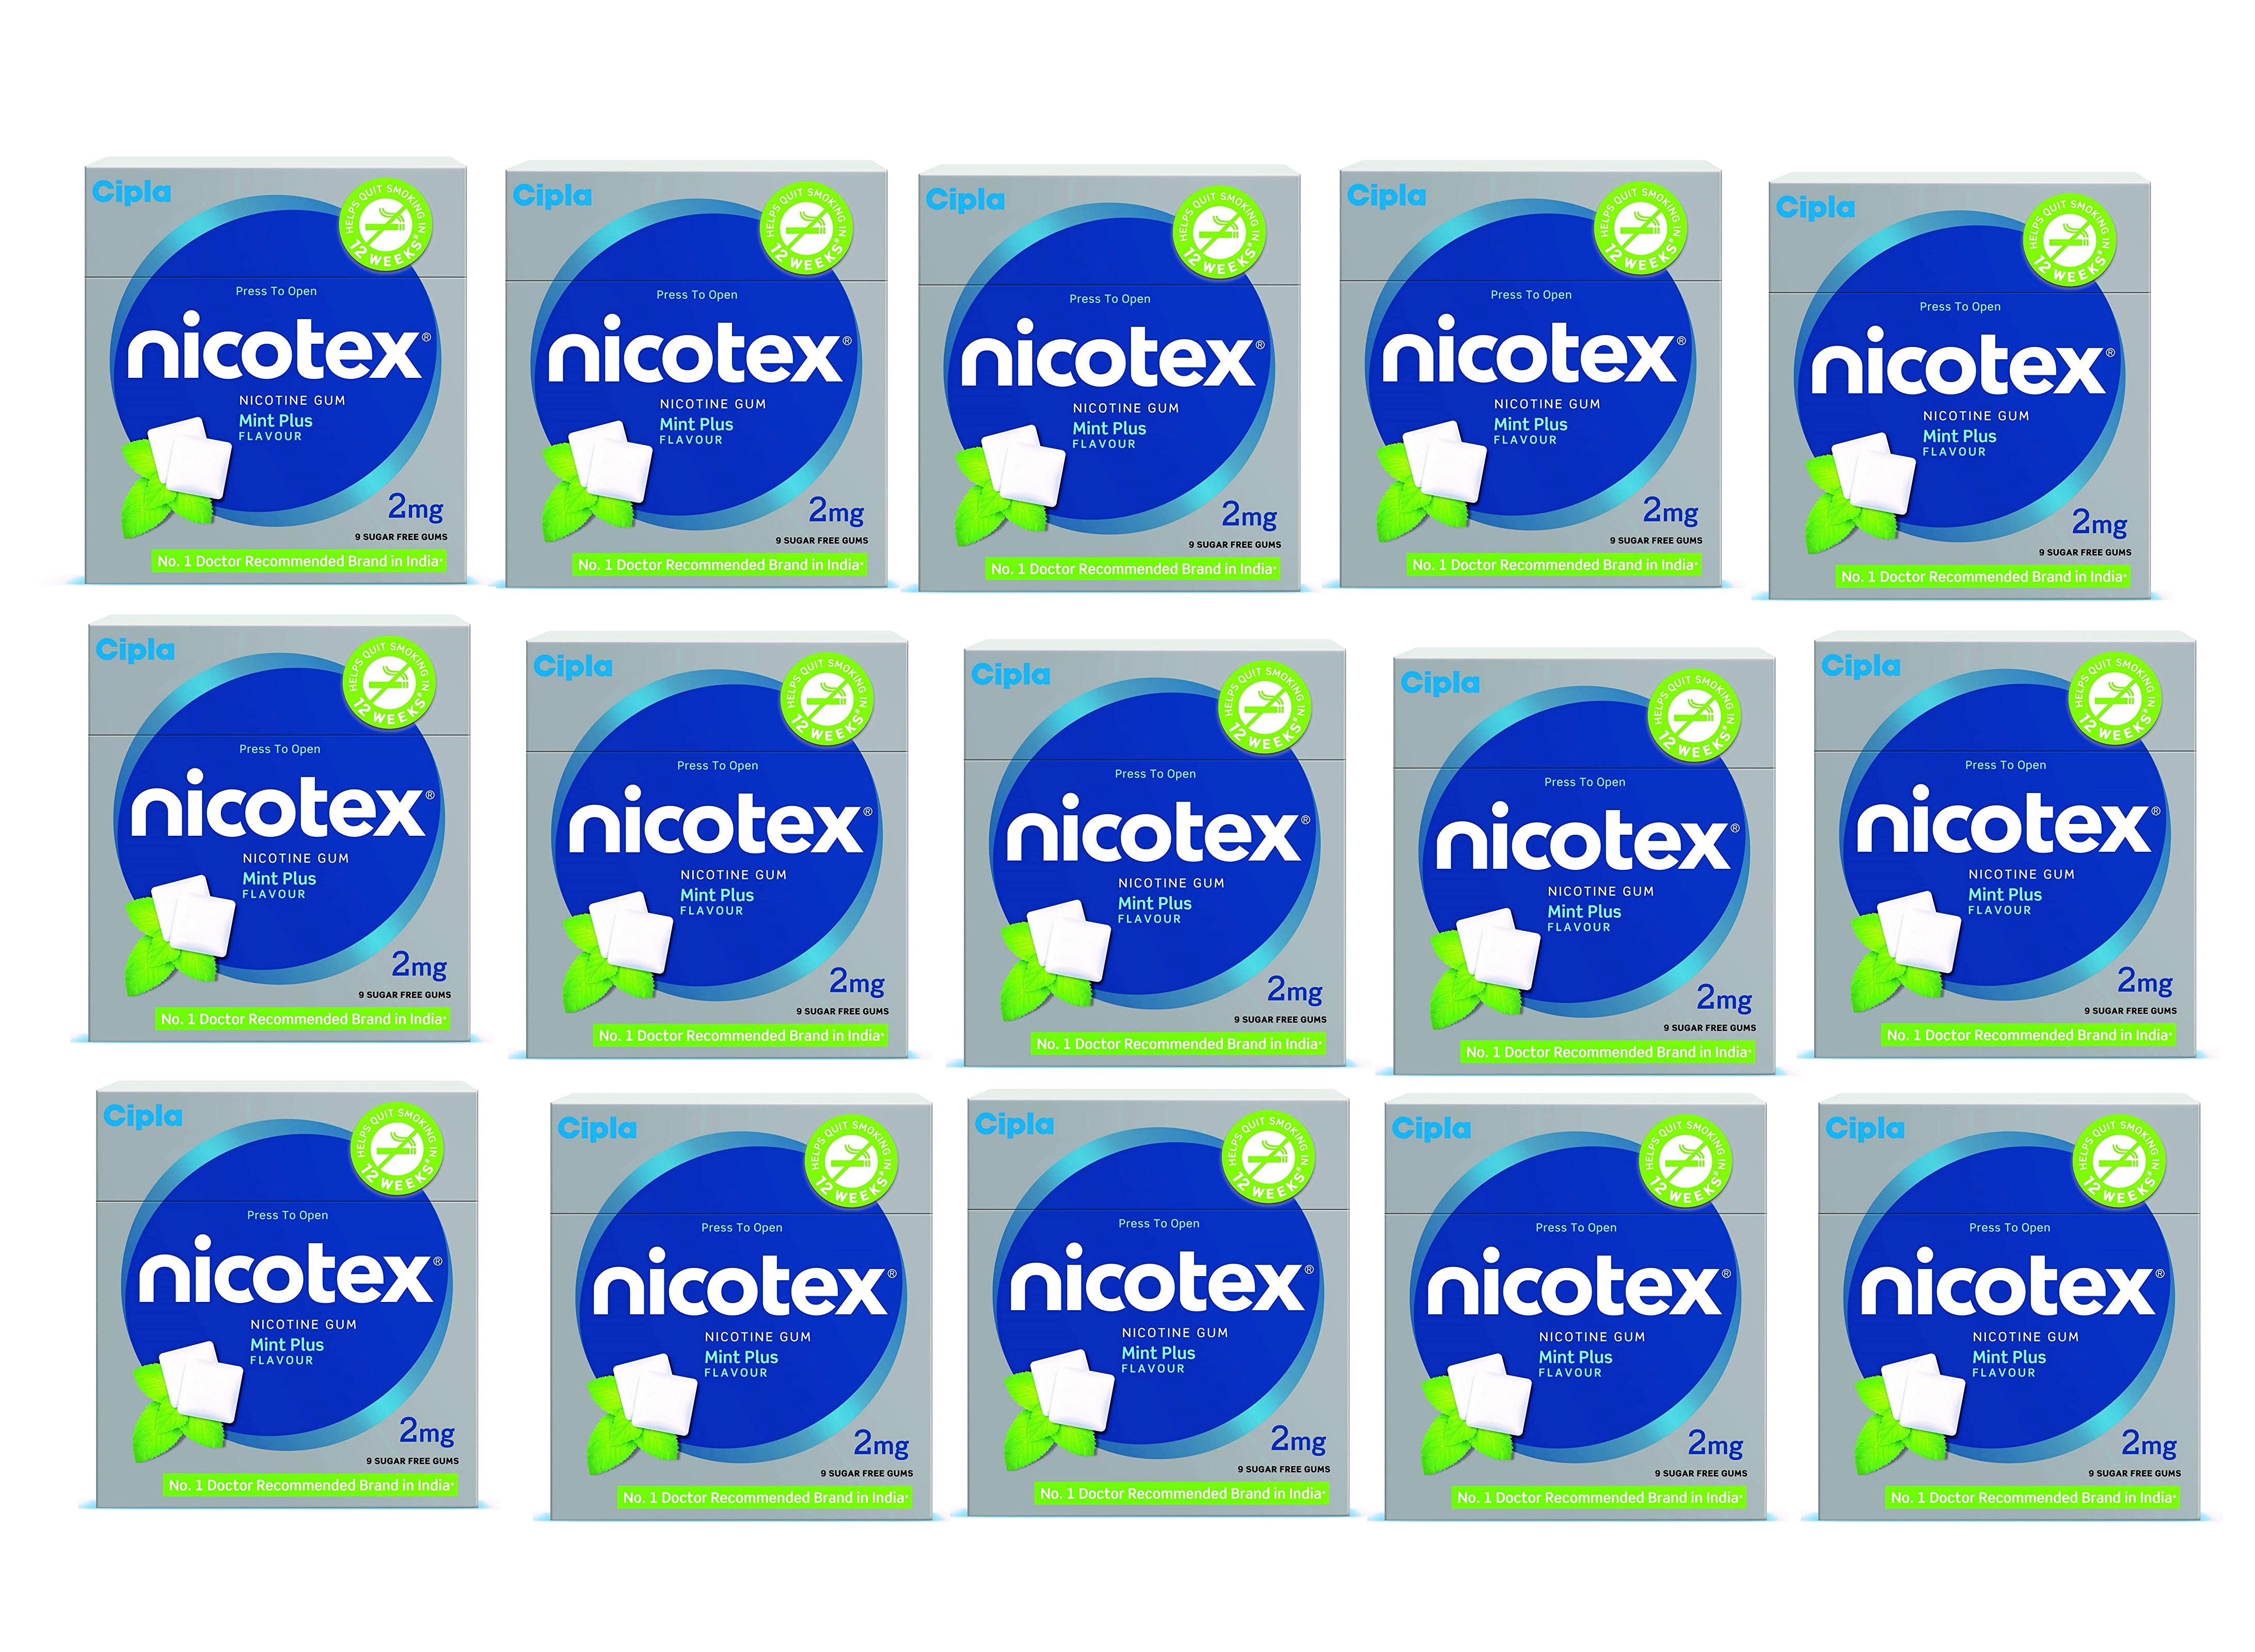 Nicotex 2mg mint plus Flavour 15 boxes